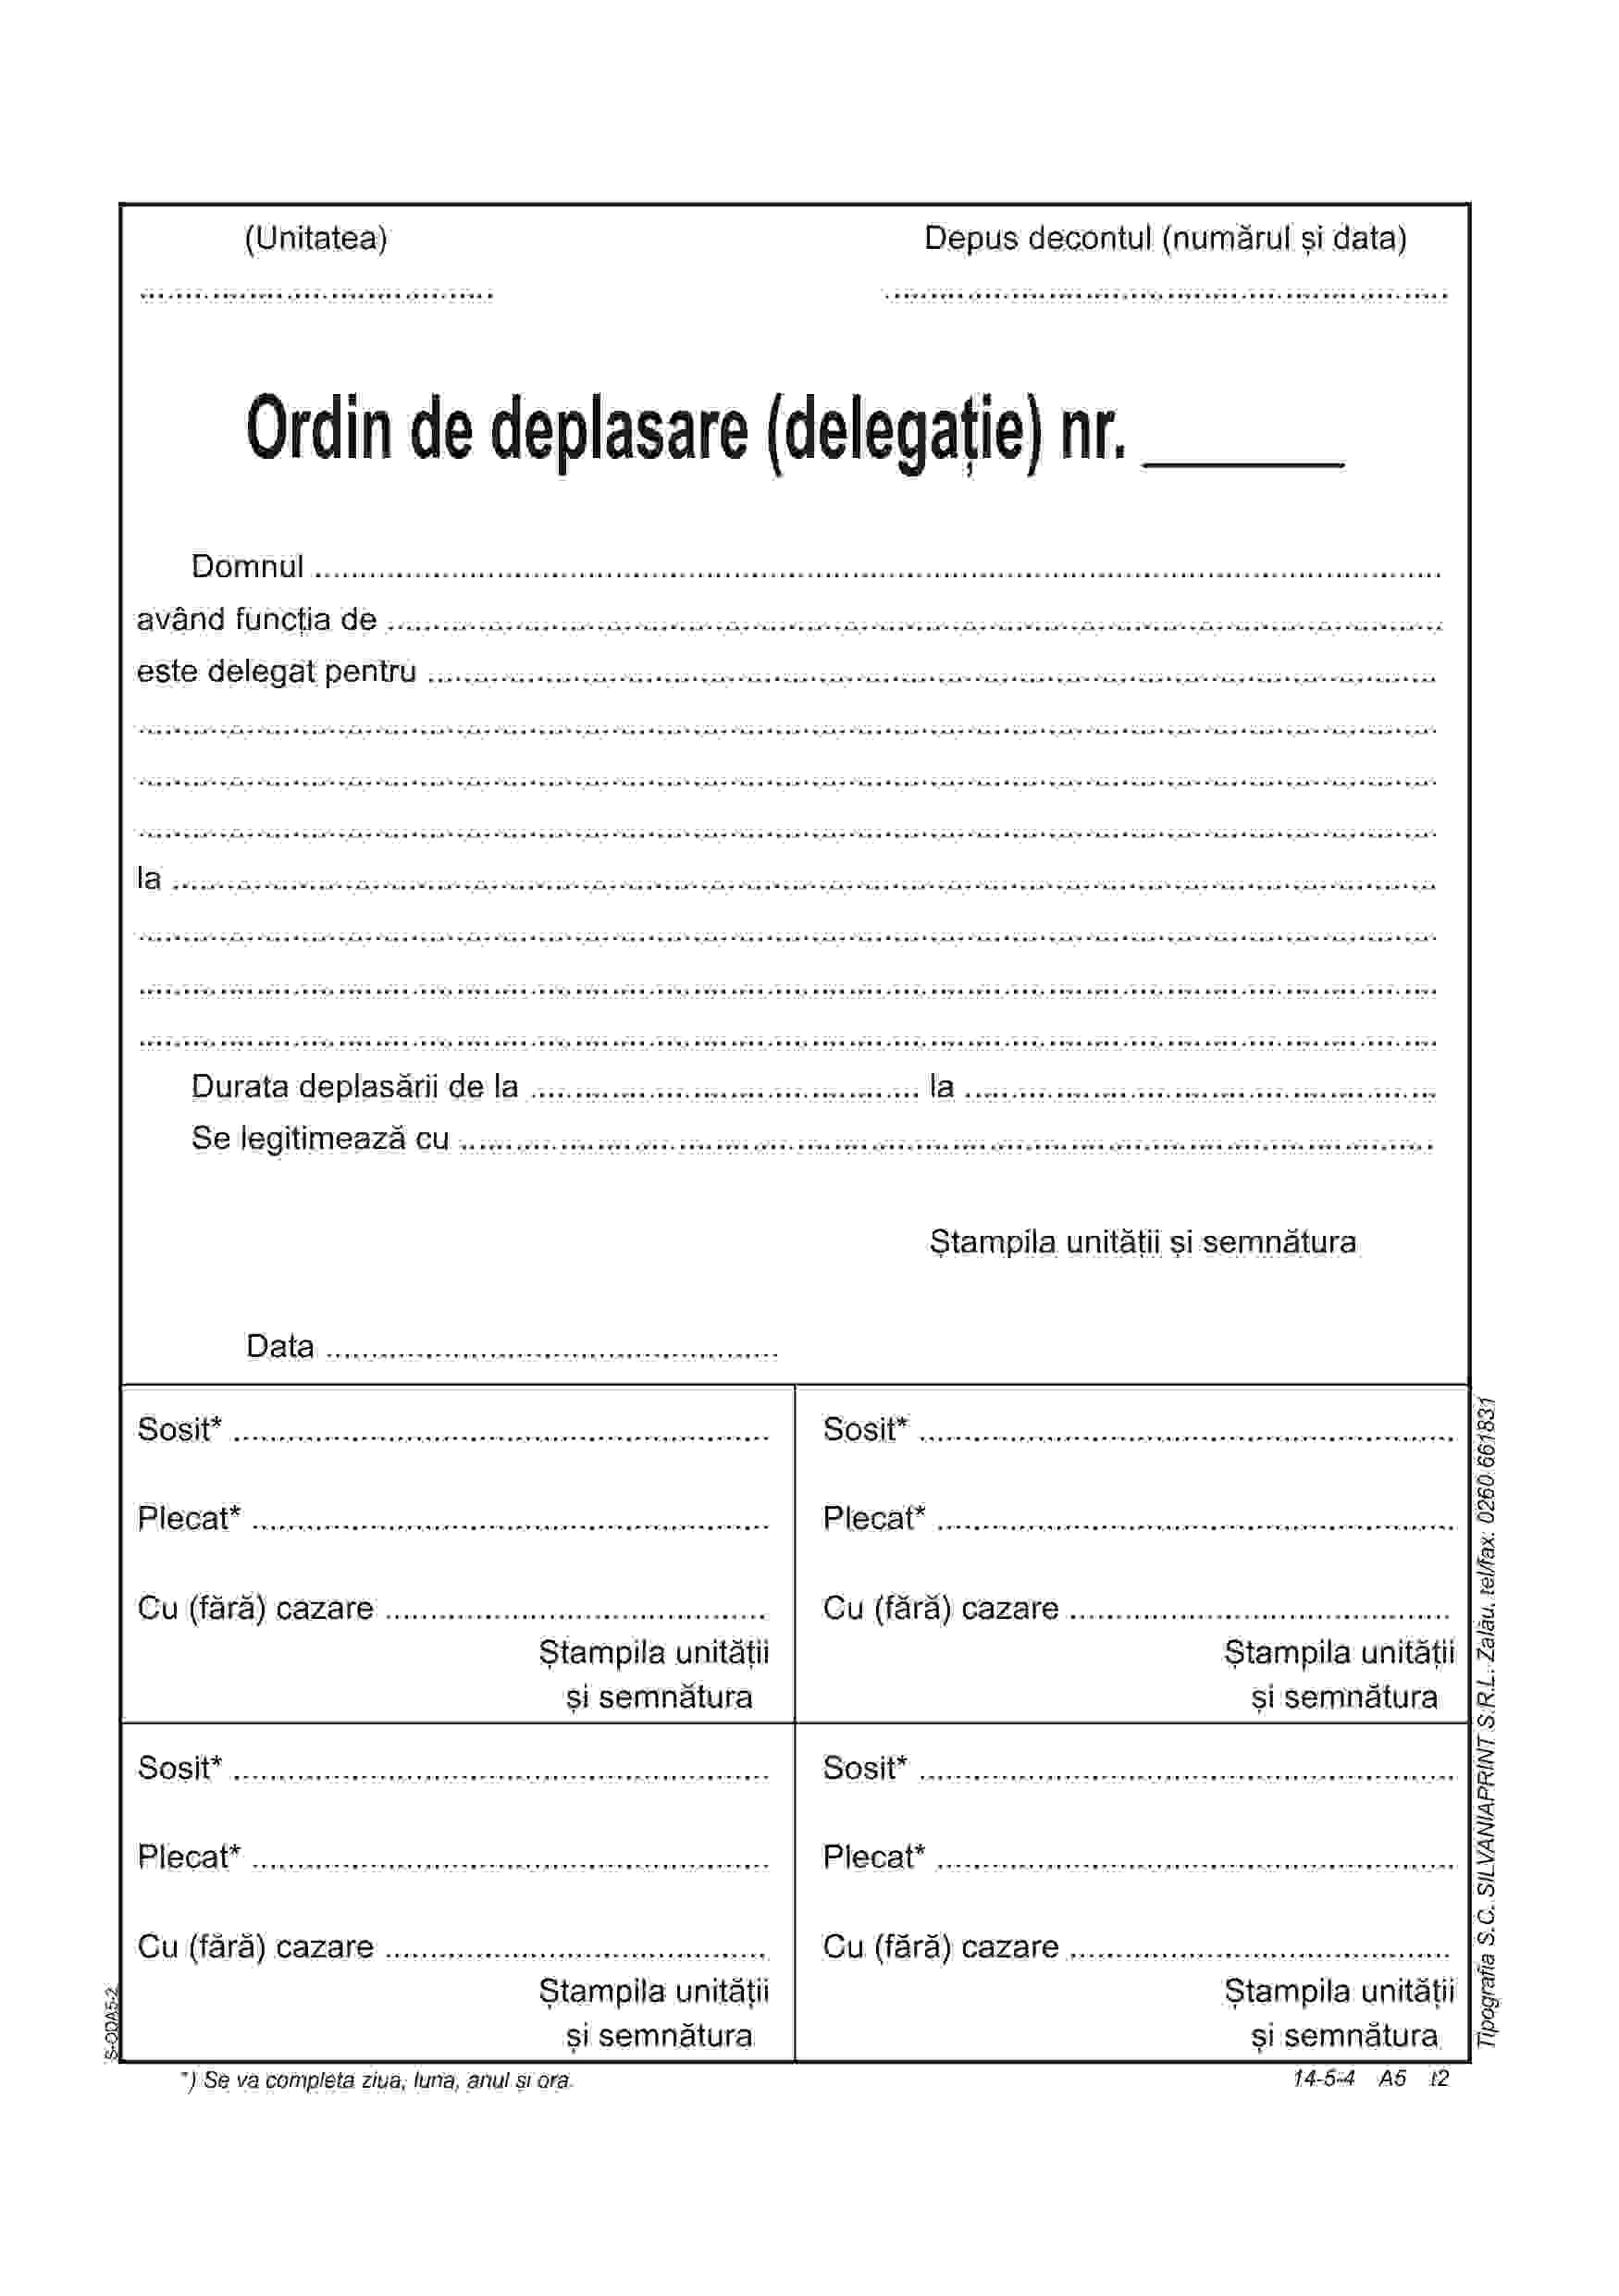 Ordin De Deplasare Delegatie A5 Carnet Silvaniaprint